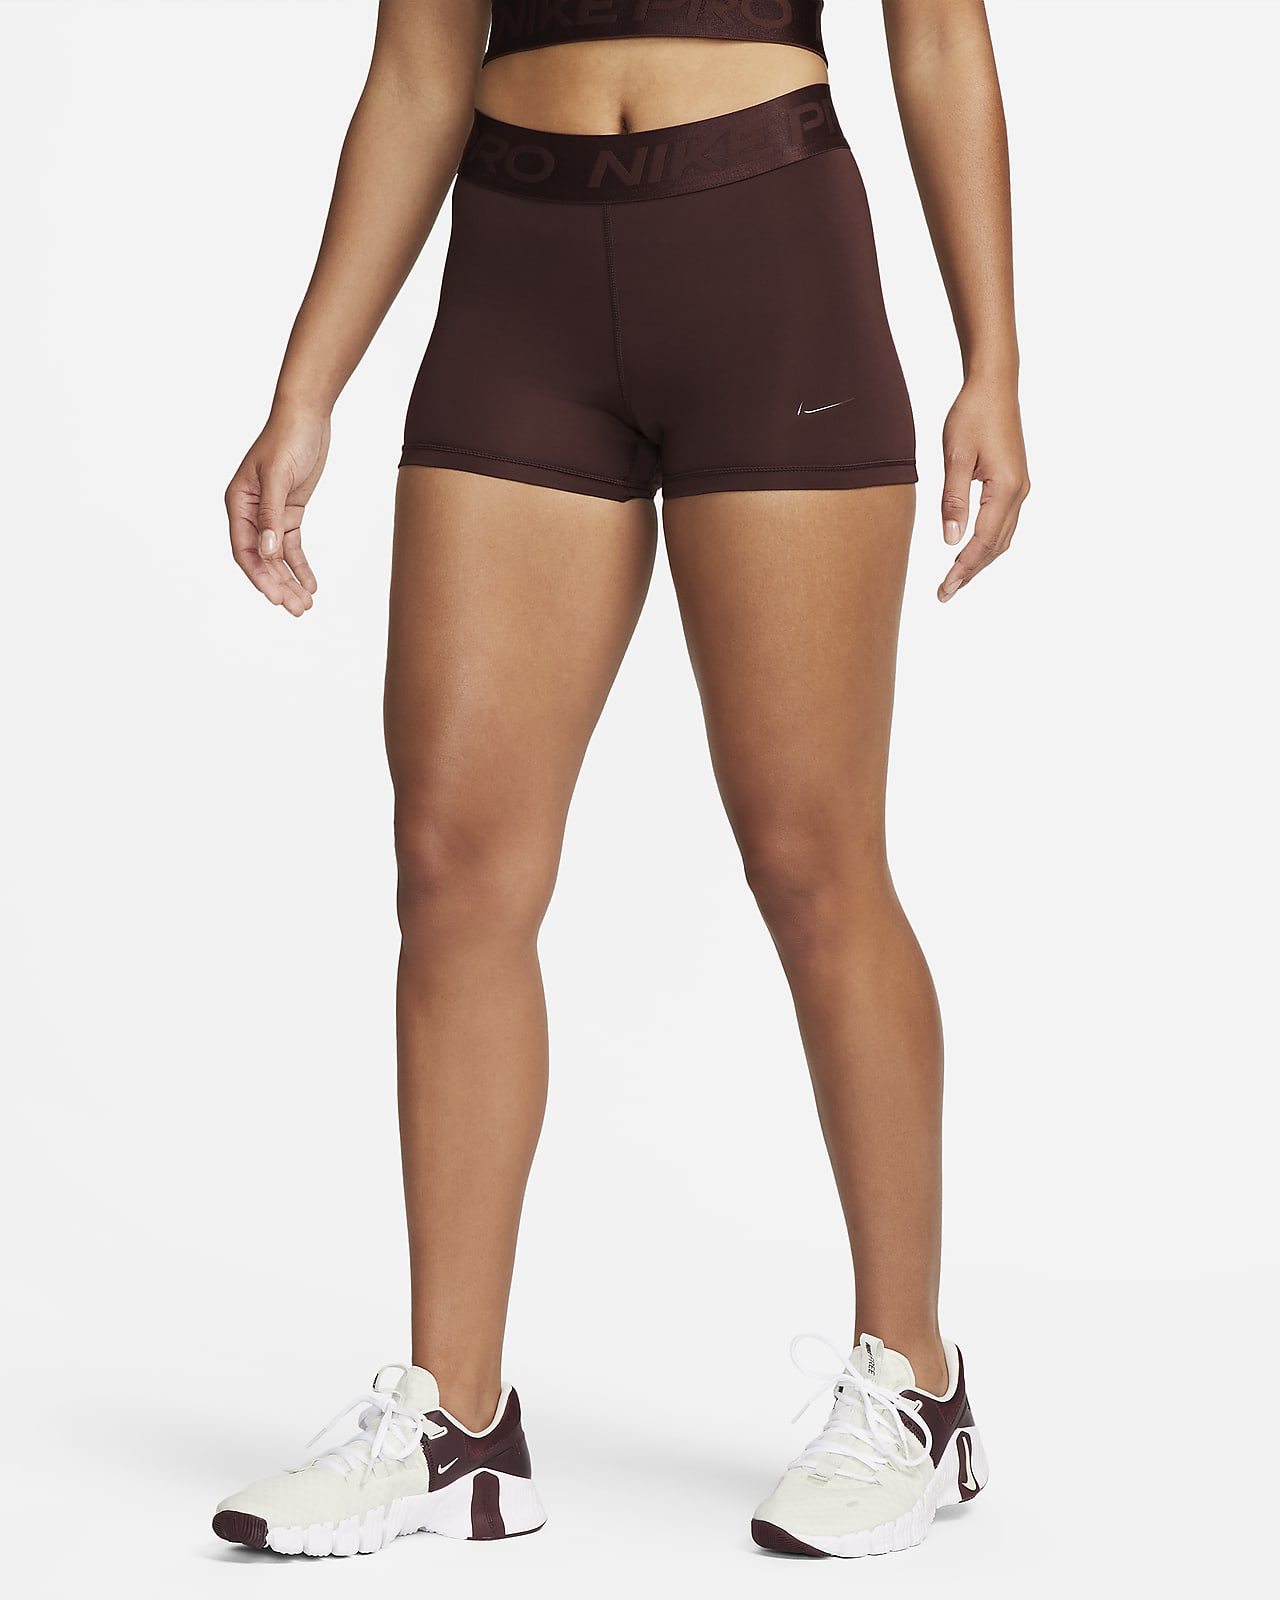 Nike Women's Pro 3 Training Shorts  Womens workout outfits, Women's  training shorts, Outfits for teens